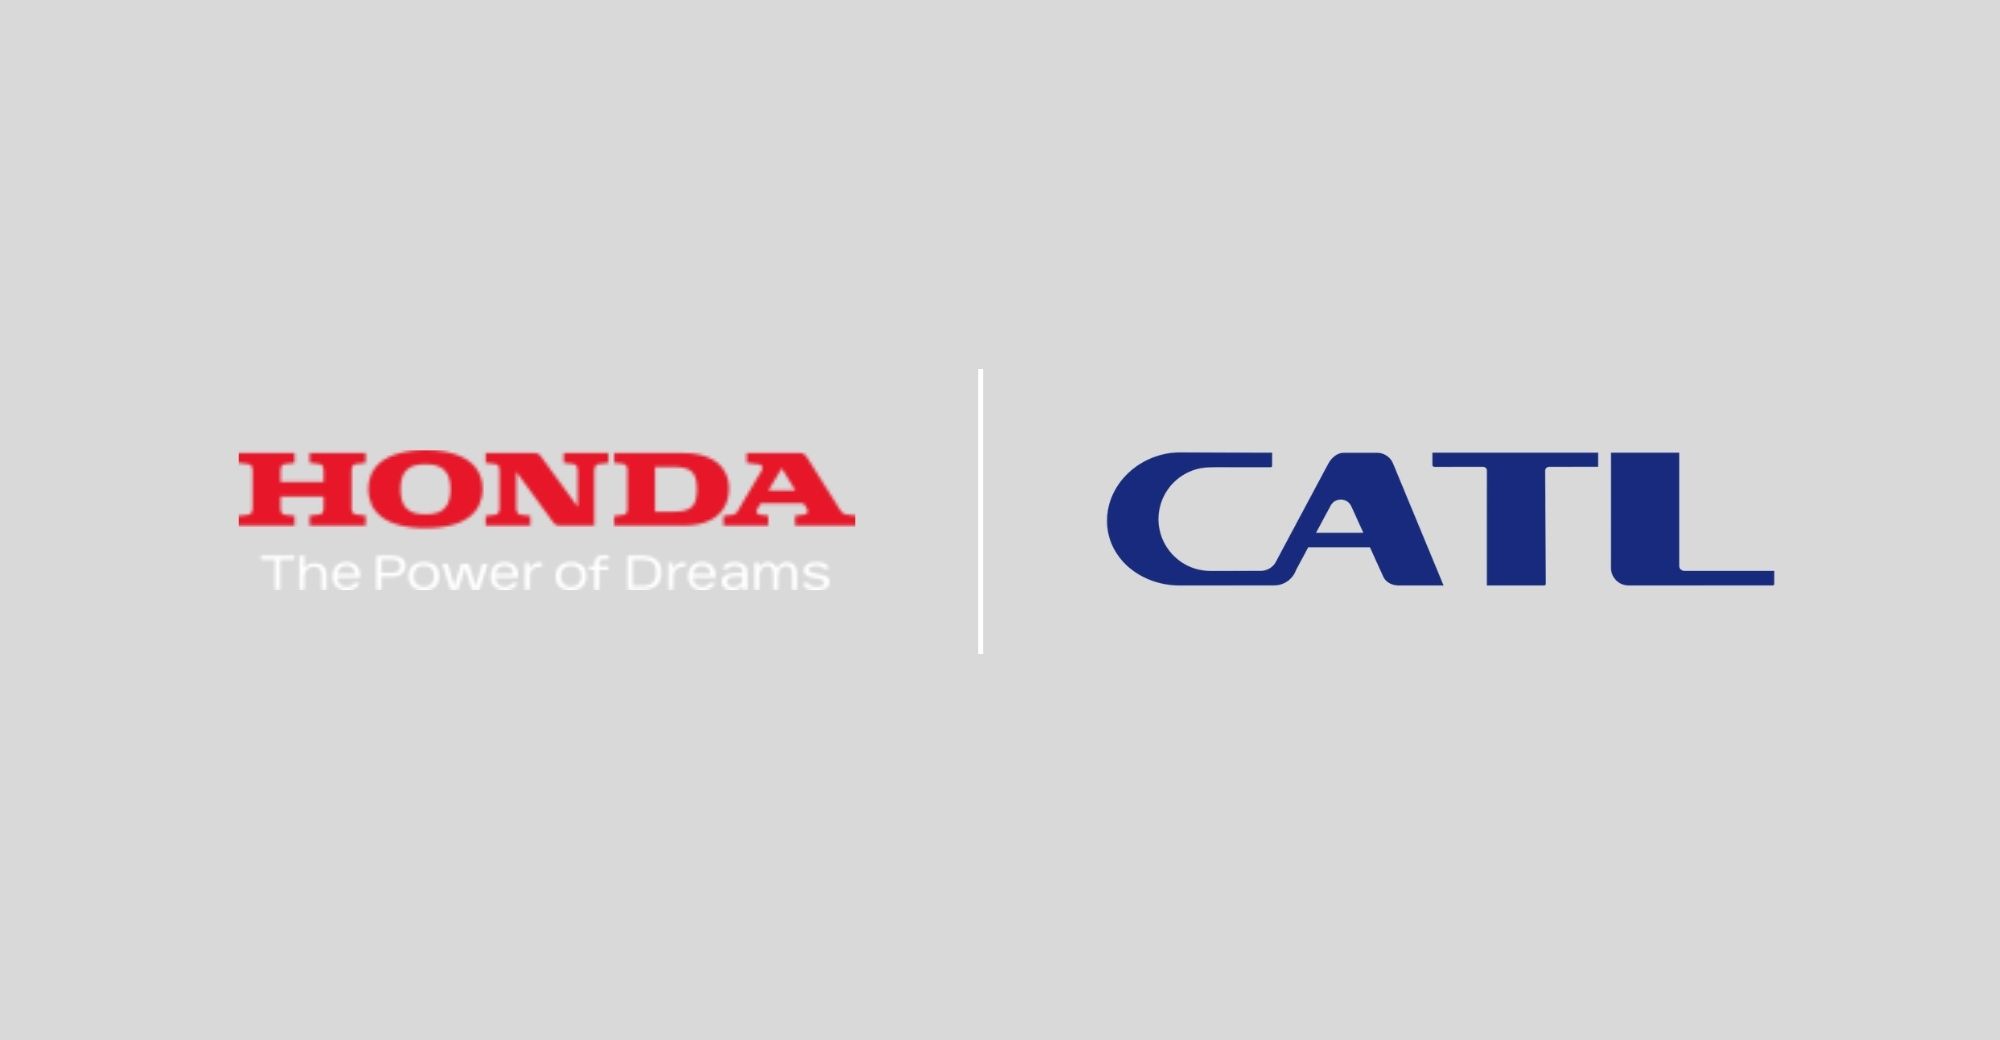 Honda China သည် CATL နှင့် ရေရှည် ဝယ်ယူ ရေး သဘောတူညီချက် ရရှိ ခဲ့သည်